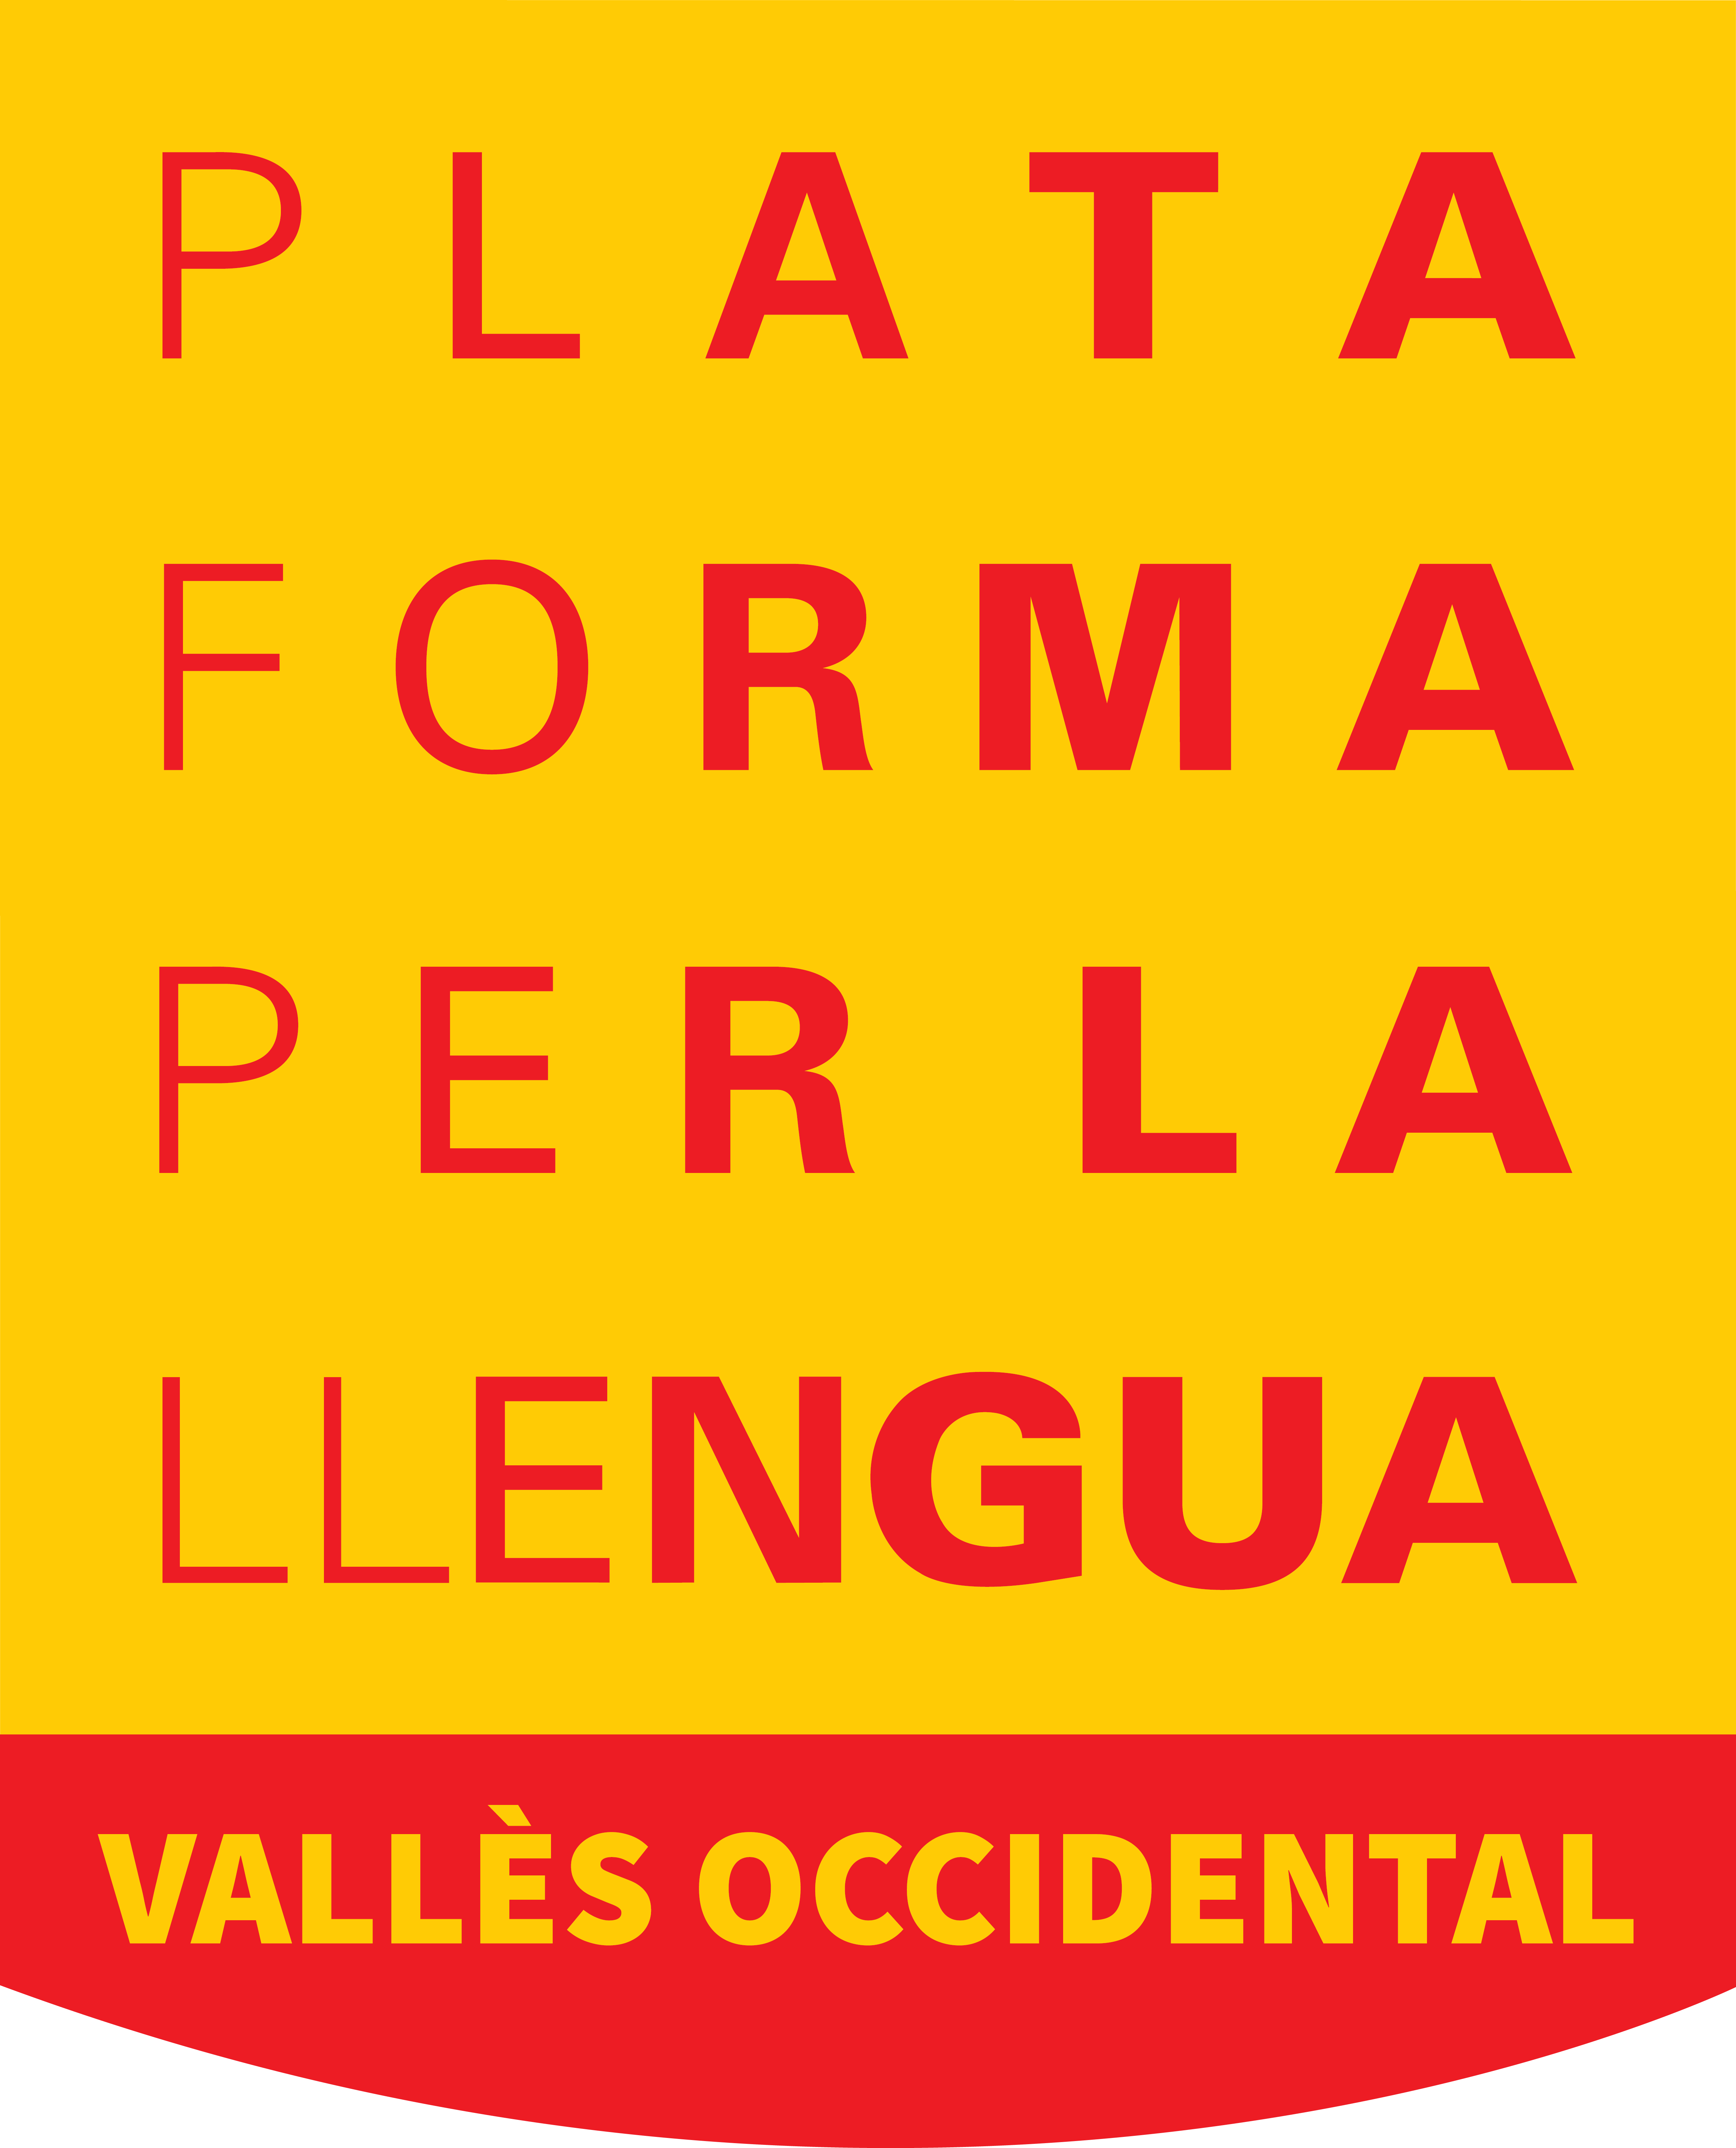 Plataforma per la Llengua 9ª edición